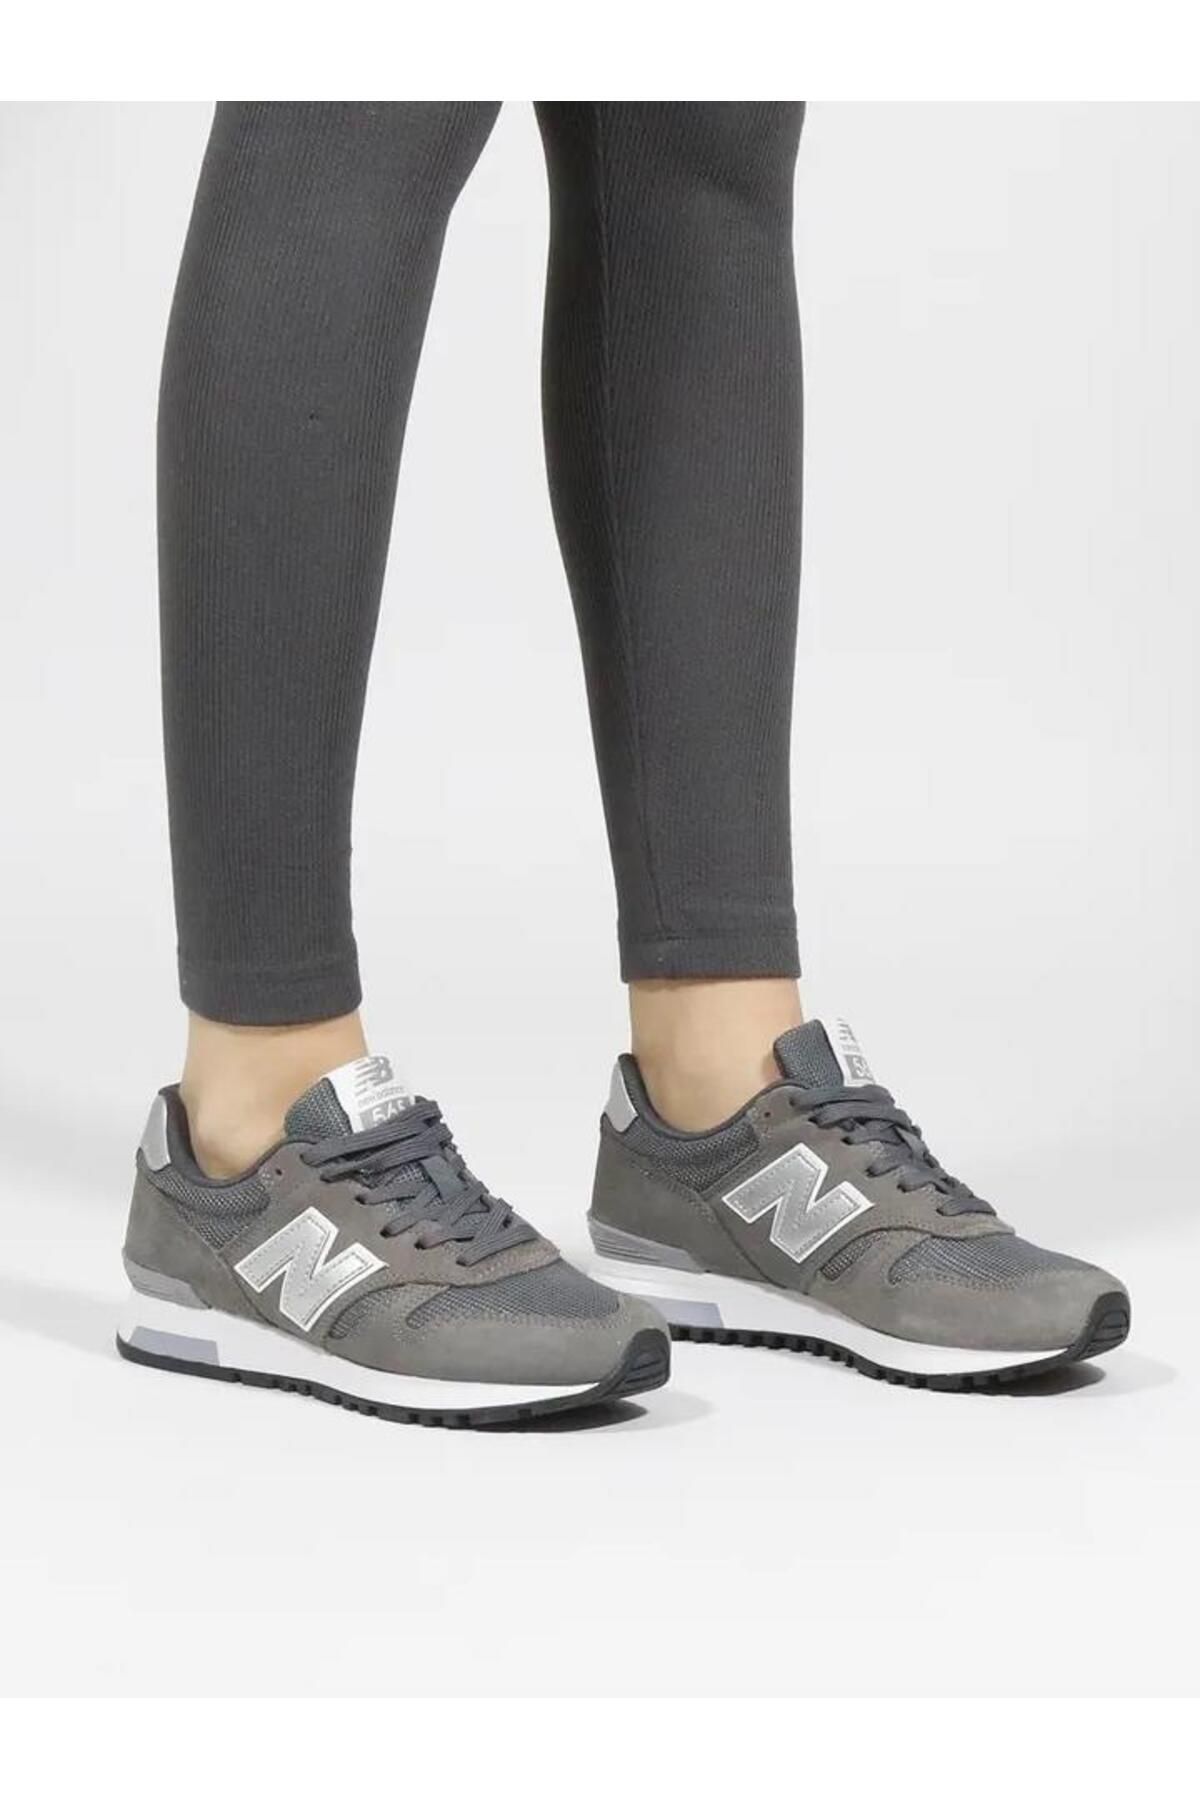 New Balance Wl565 Antrasit Gri Kadın Günlük Spor Ayakkabı